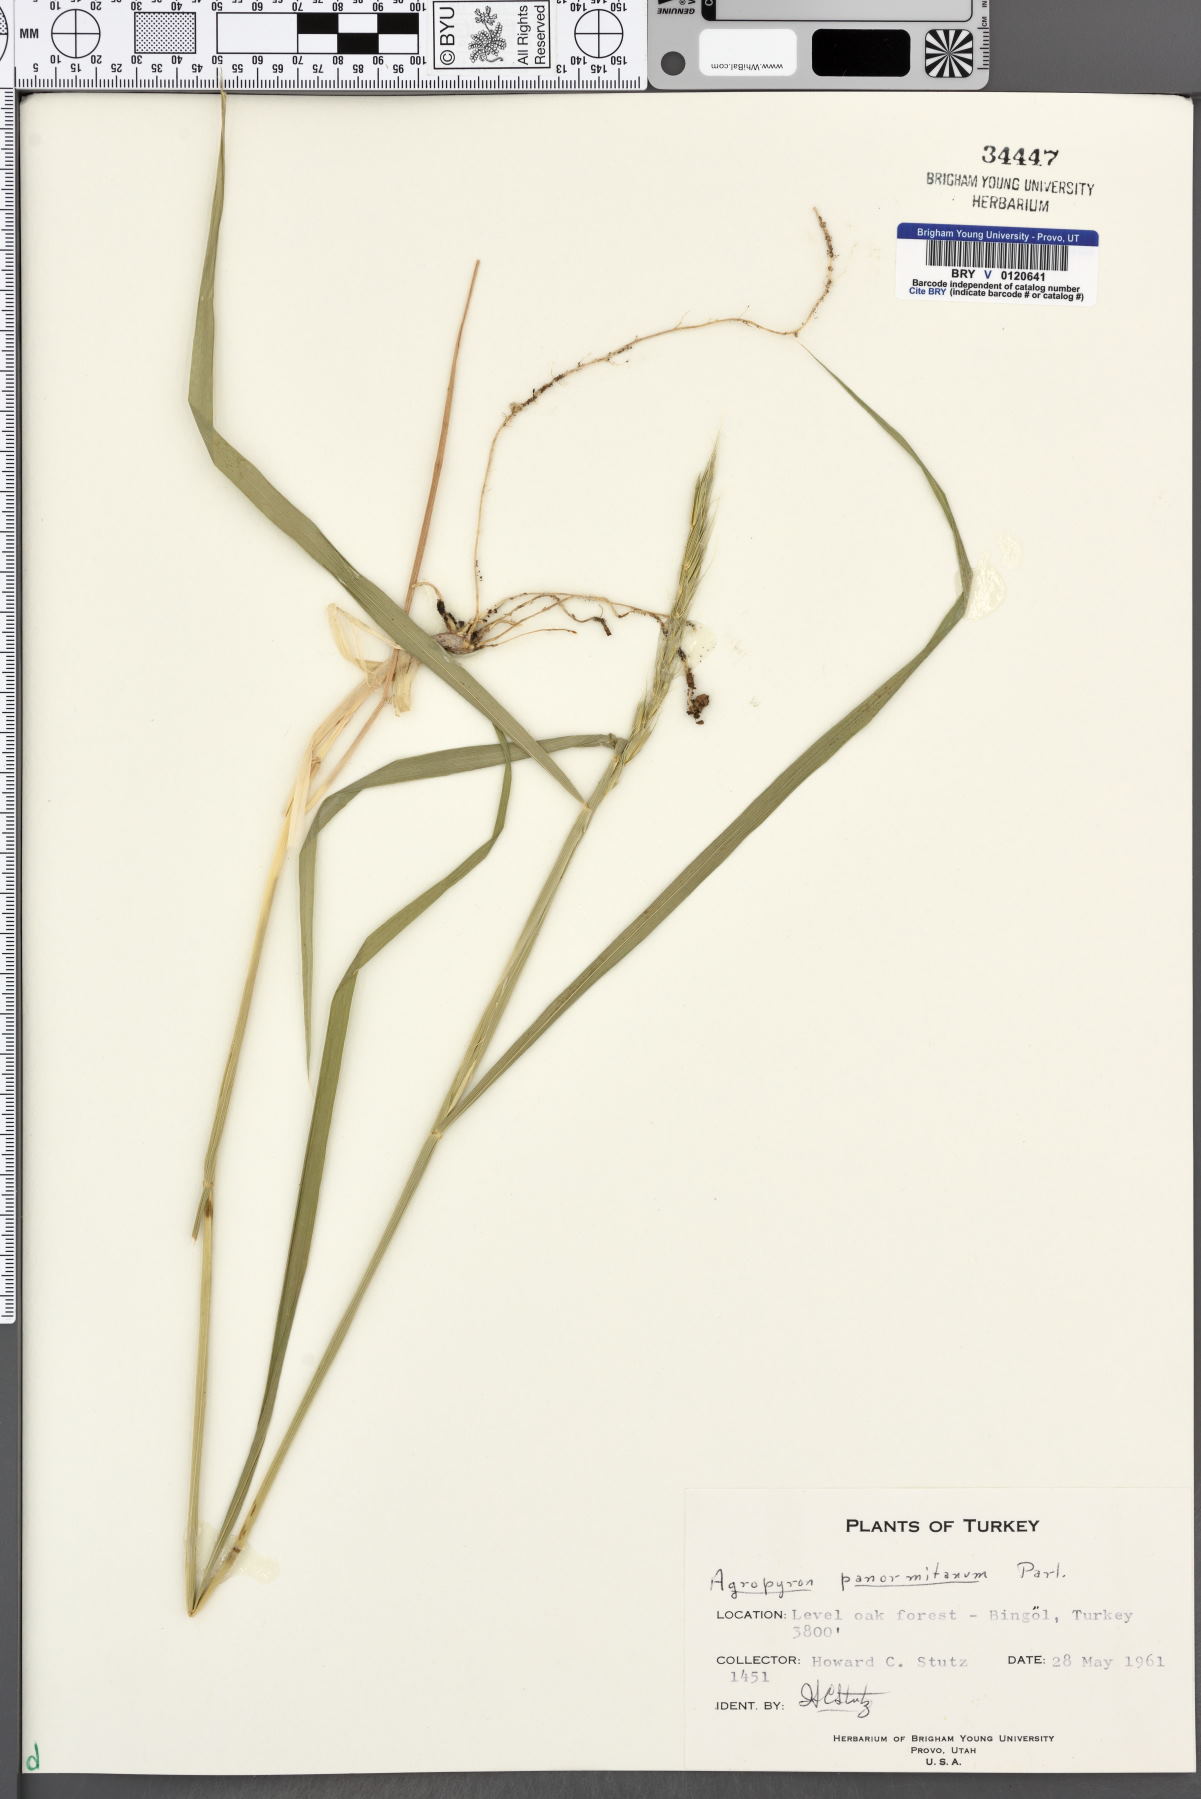 Elymus panormitanus image